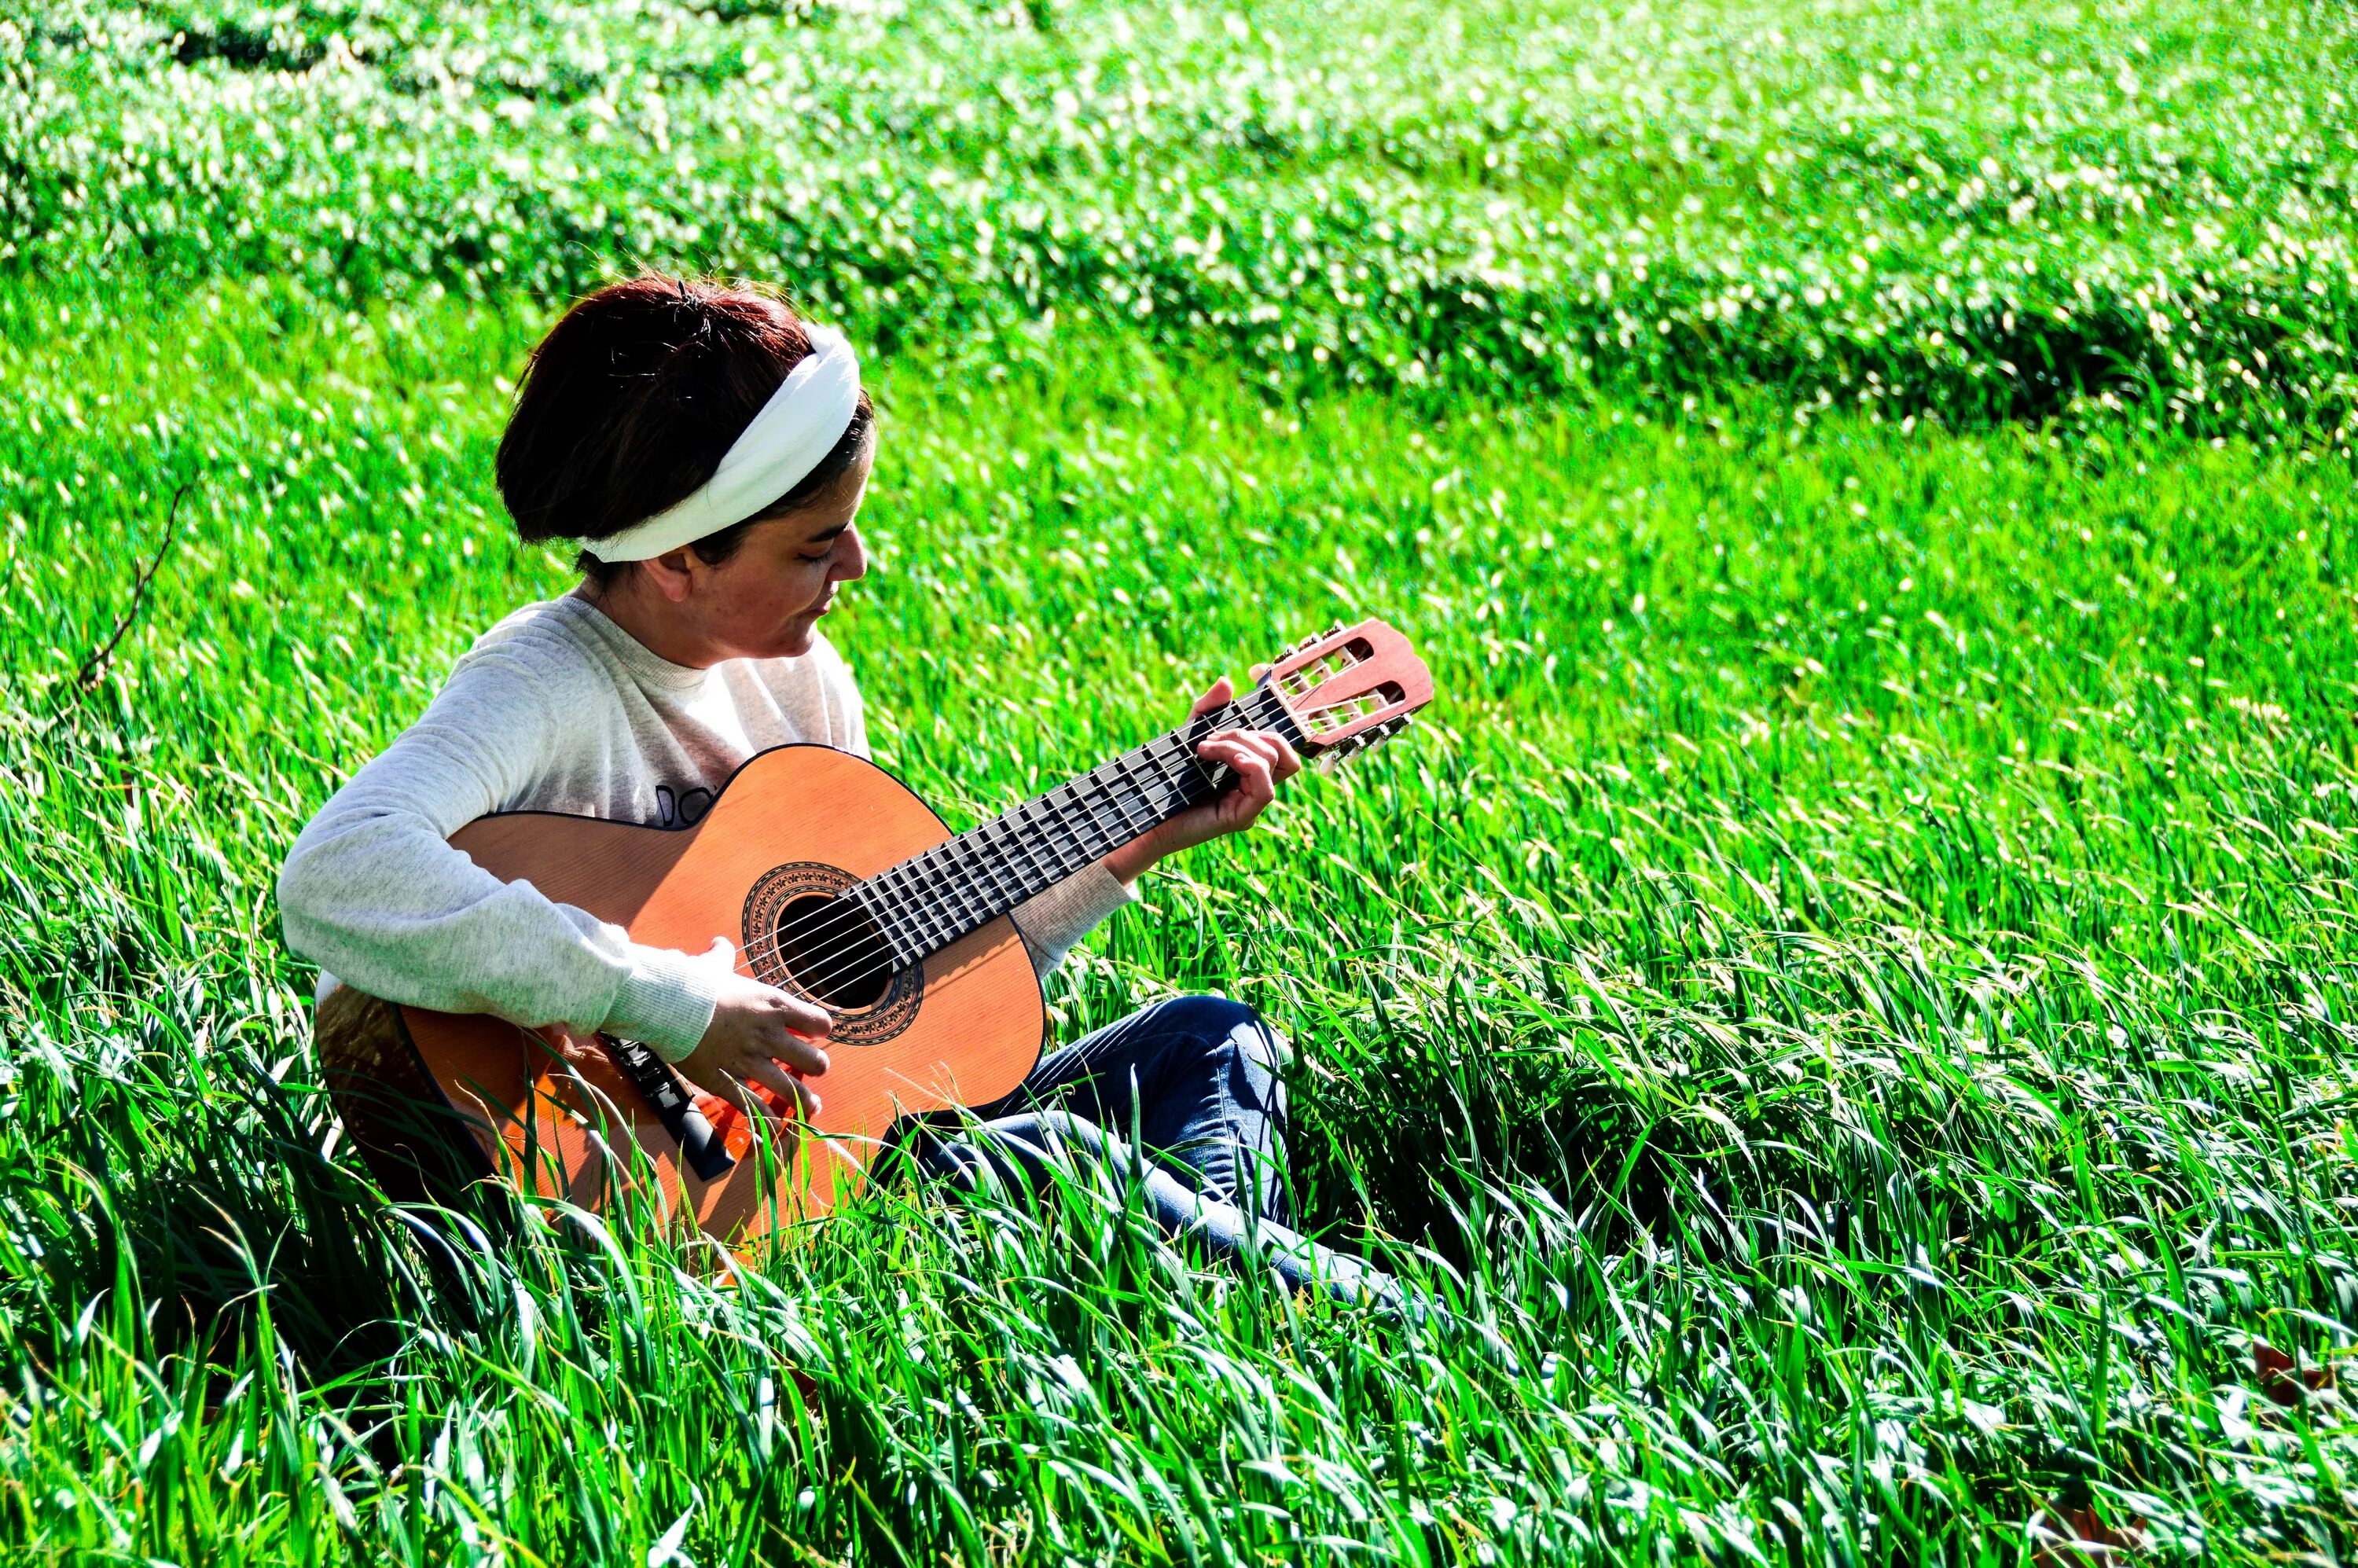 Фотосессия с гитарой на природе. Девочка с гитарой. Девушка с гитарой на траве. Гитара на природе. Сыграть на гитаре в траве